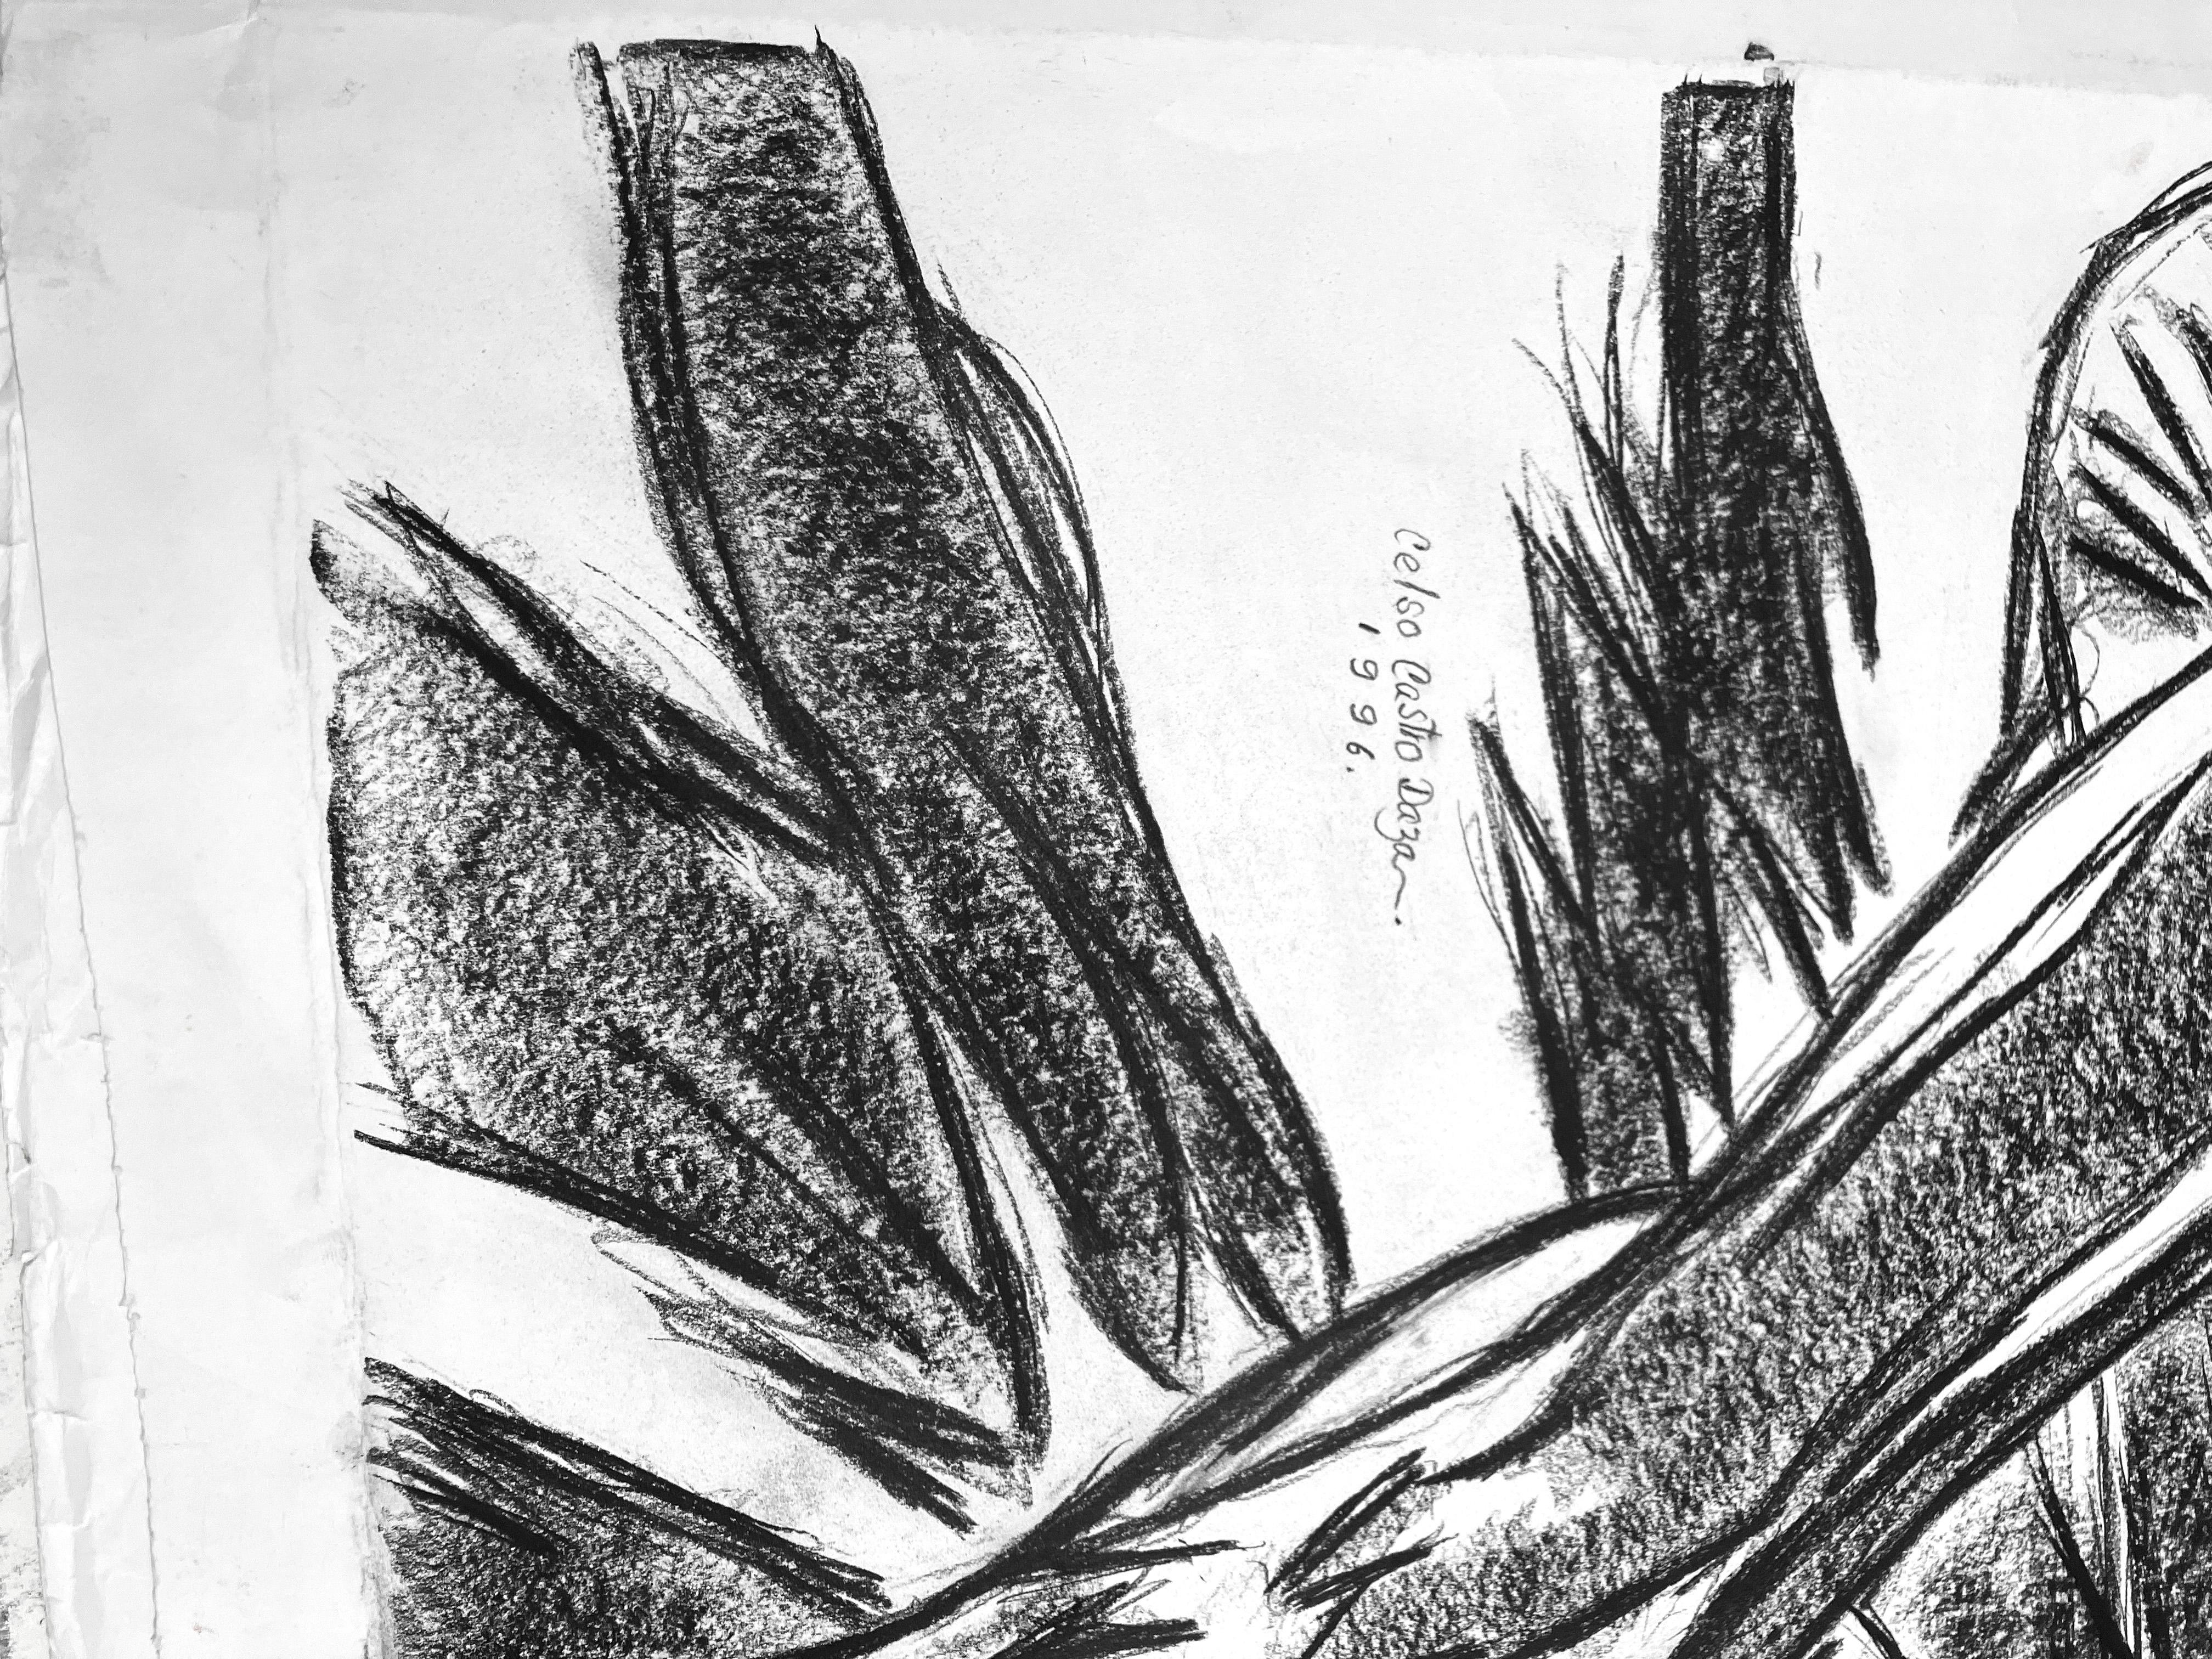 Sans titre, 1996  par Celso Castro
Crayon sur papier d'archivage
Taille de l'image : 39 H in. x 48 in. W 
Taille de la feuille : 43 H in. x 59 in. W 
Non encadré
____________
Indéfinies par le médium, les œuvres de Celso Castro portent chacune la